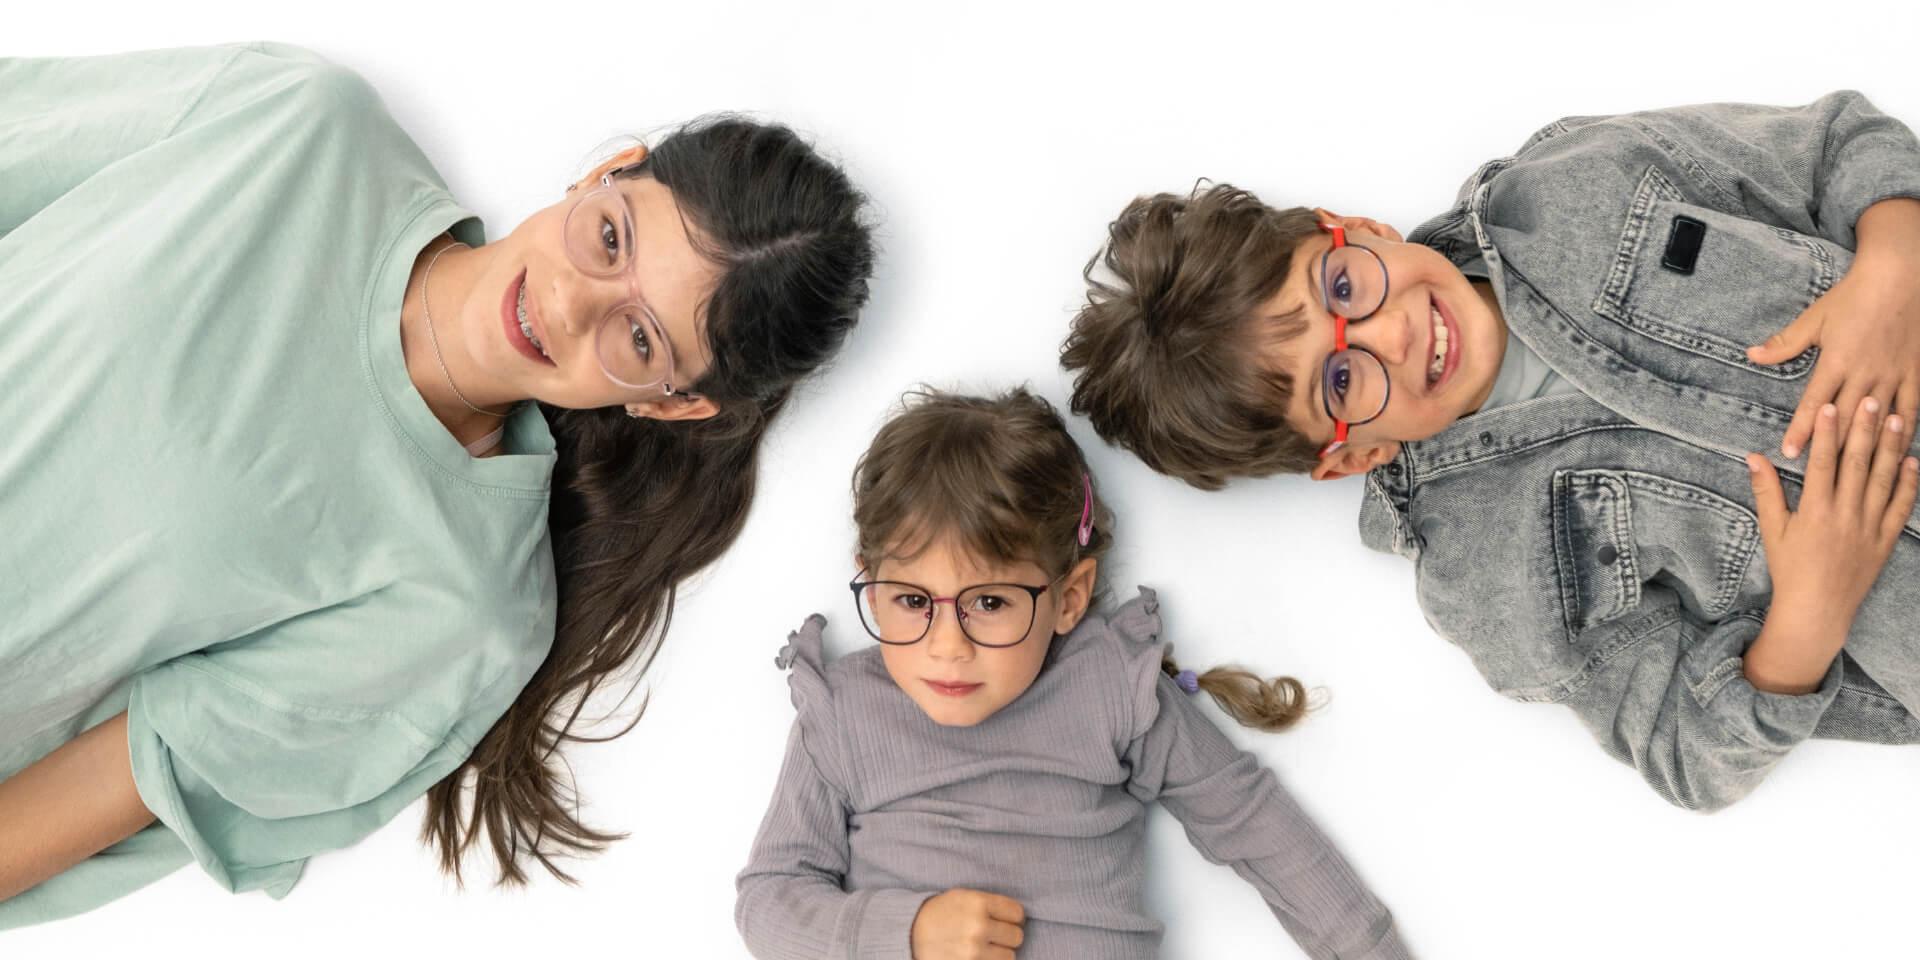 Een tiener en twee jongere kinderen liggen op de grond en dragen ZEISS myopie-brillenglazen.